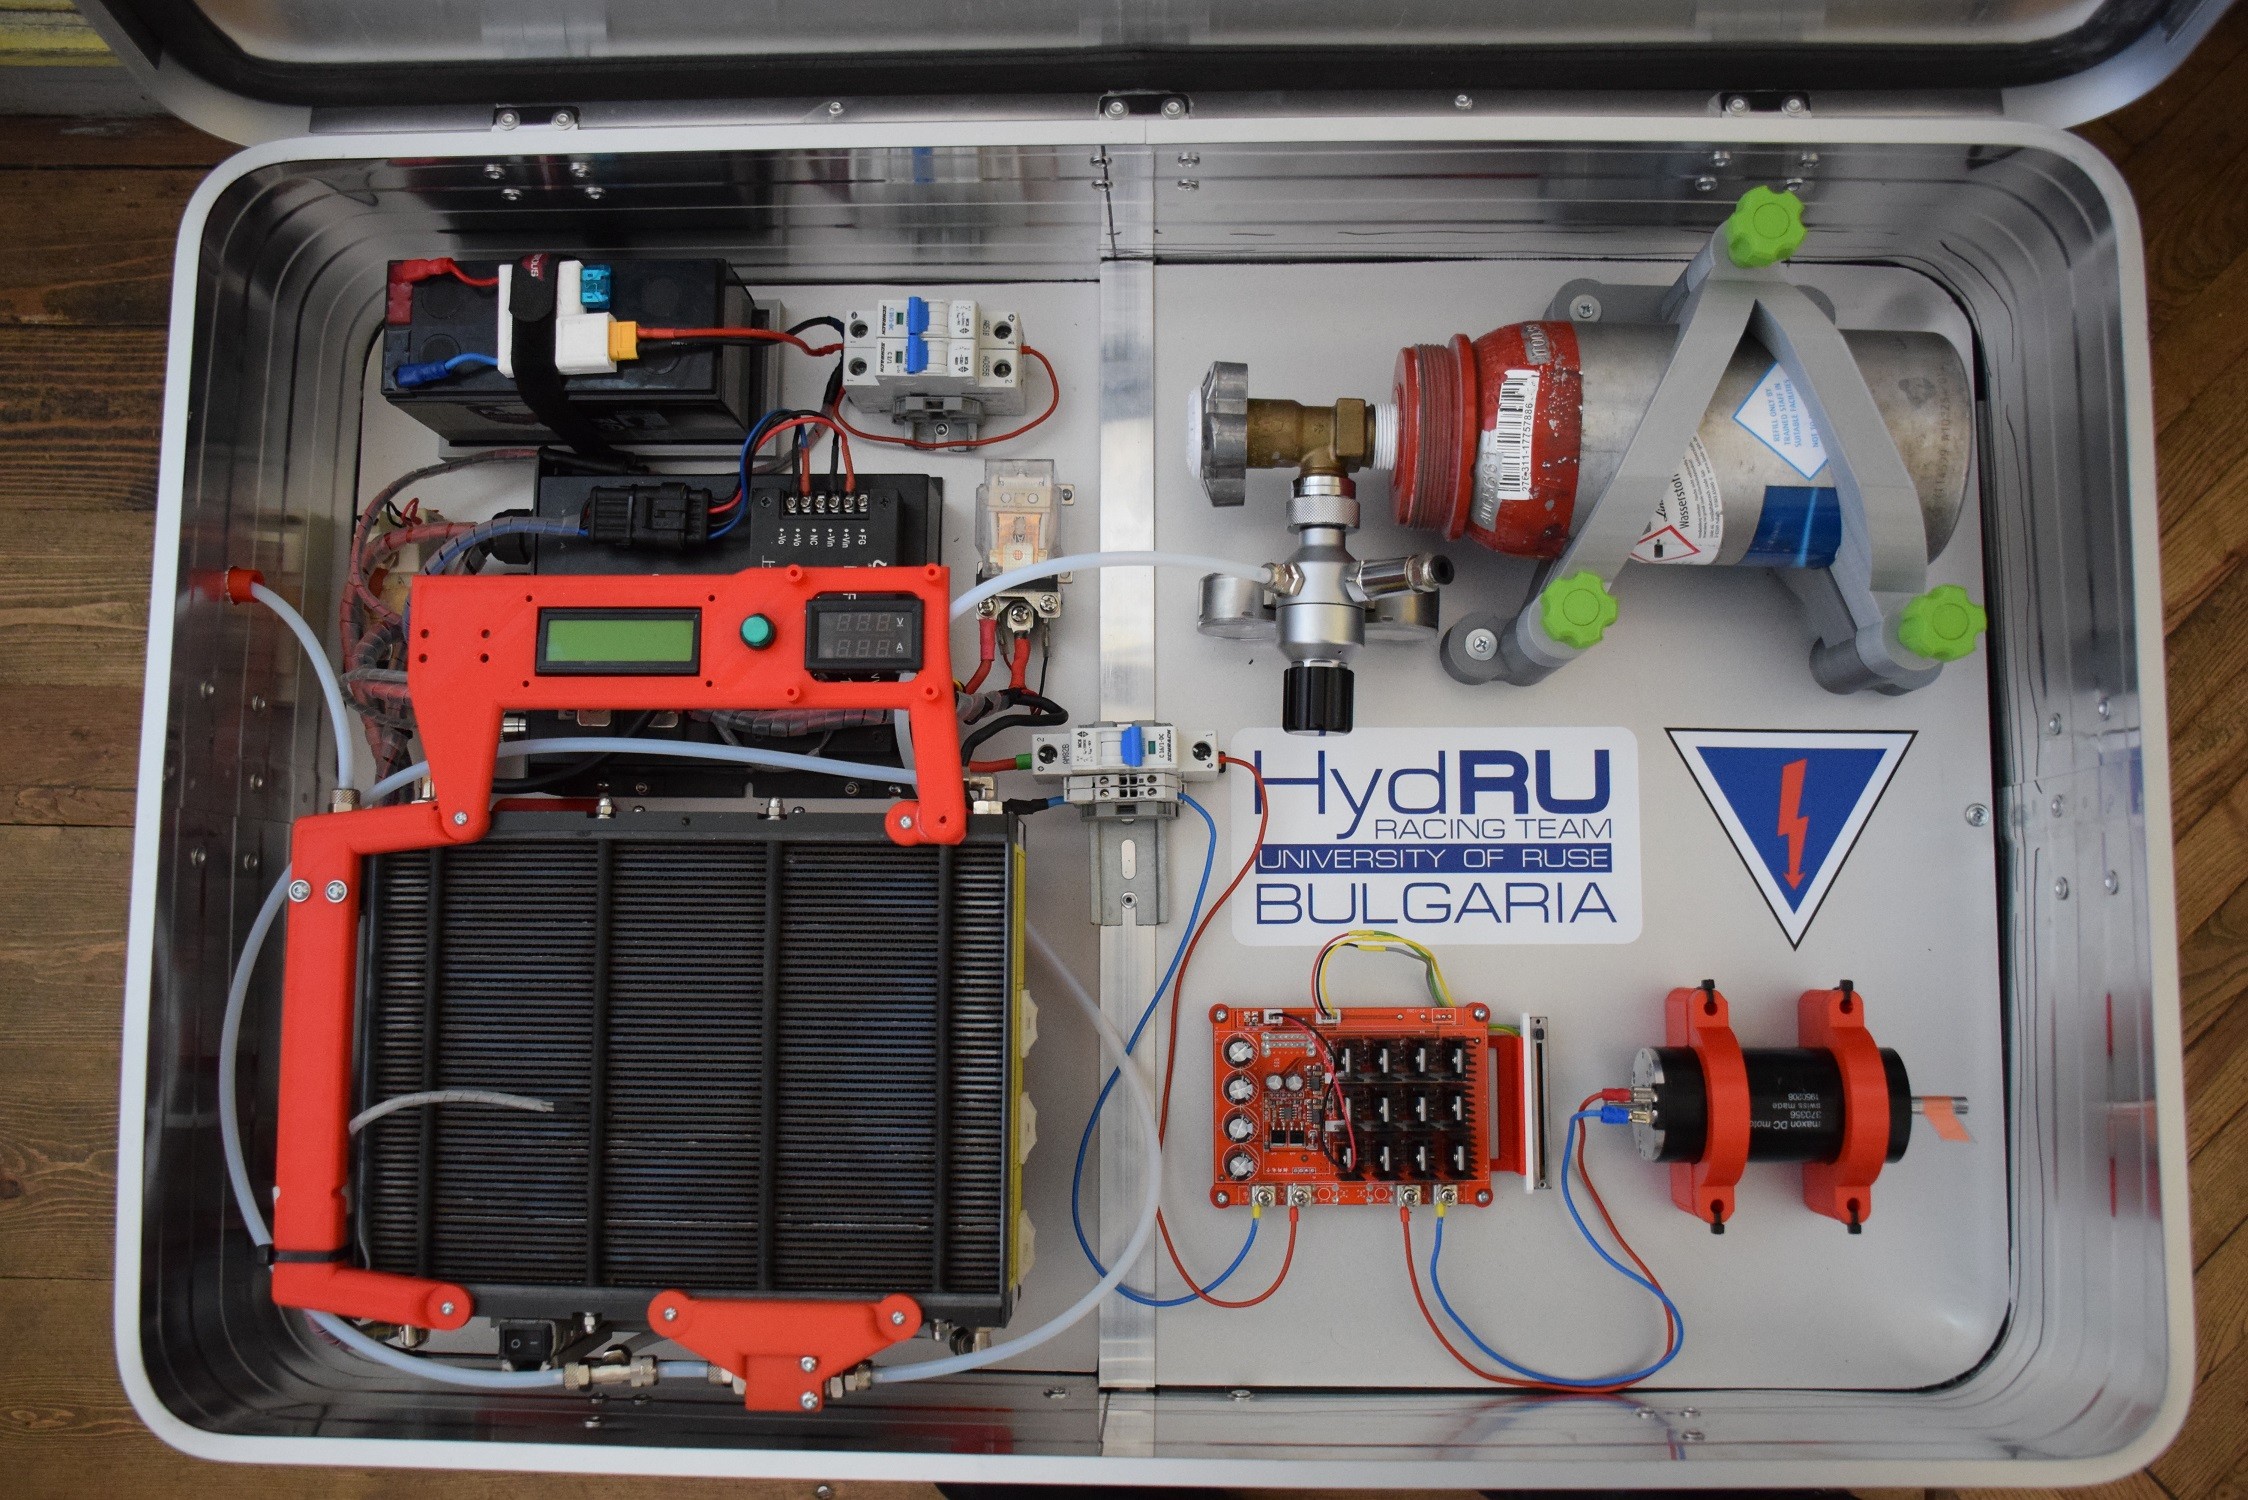 Ученици от Русе се учат в мобилна водородна лаборатория „Hydro Lab“